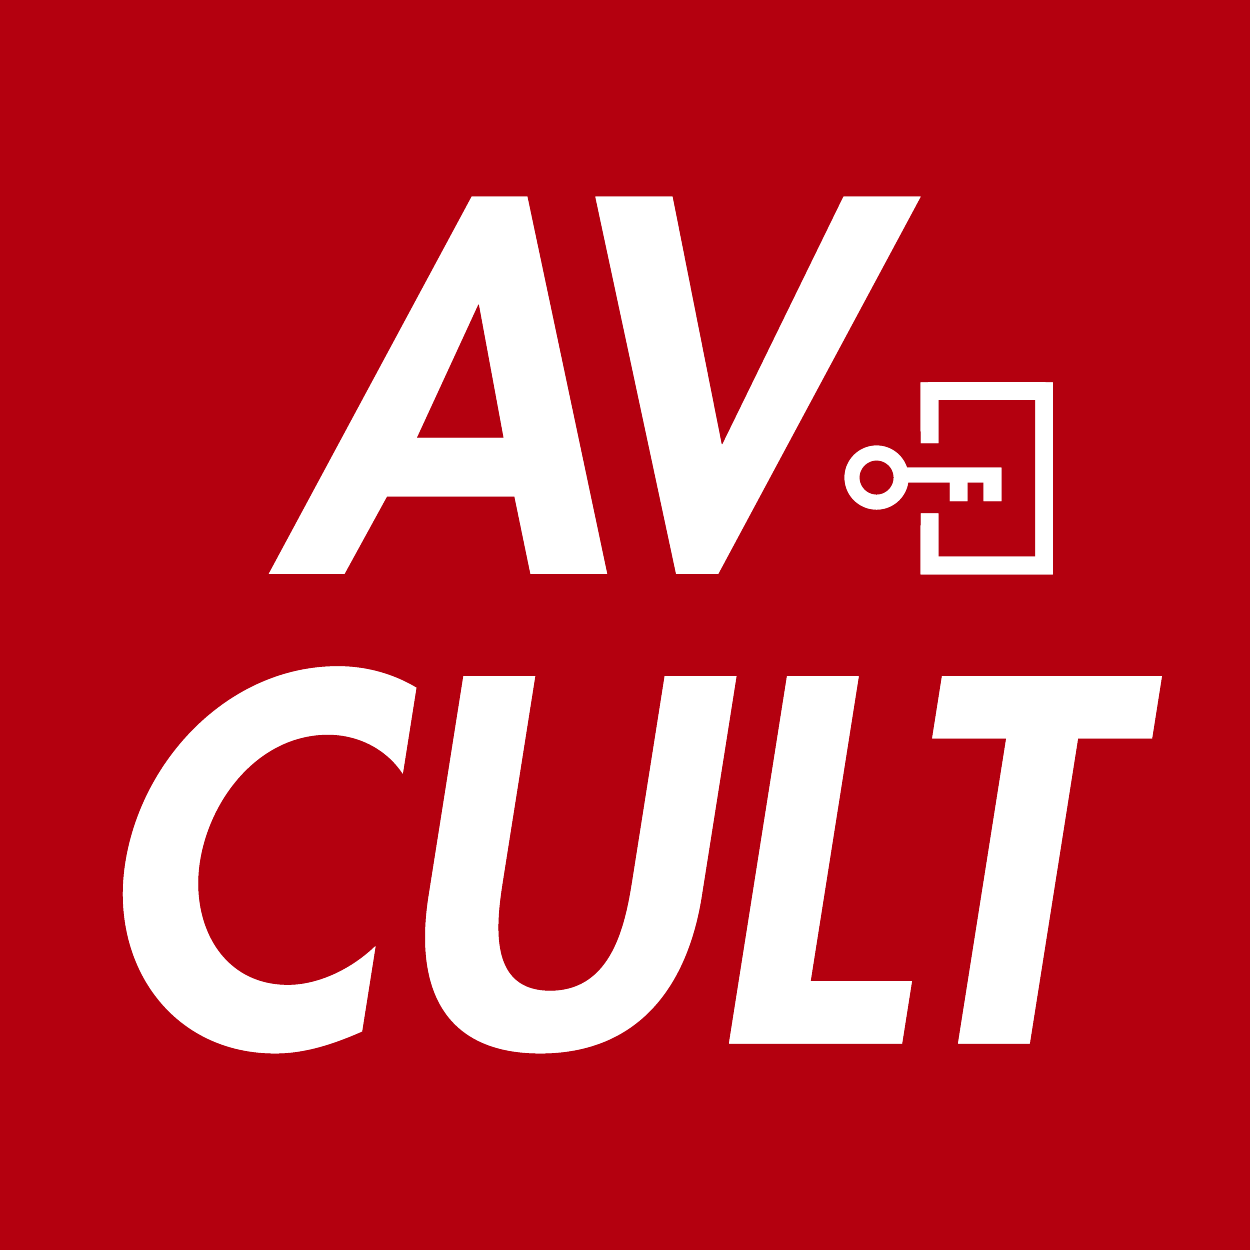 AV CULT 粉絲見面會 的活動 Logo